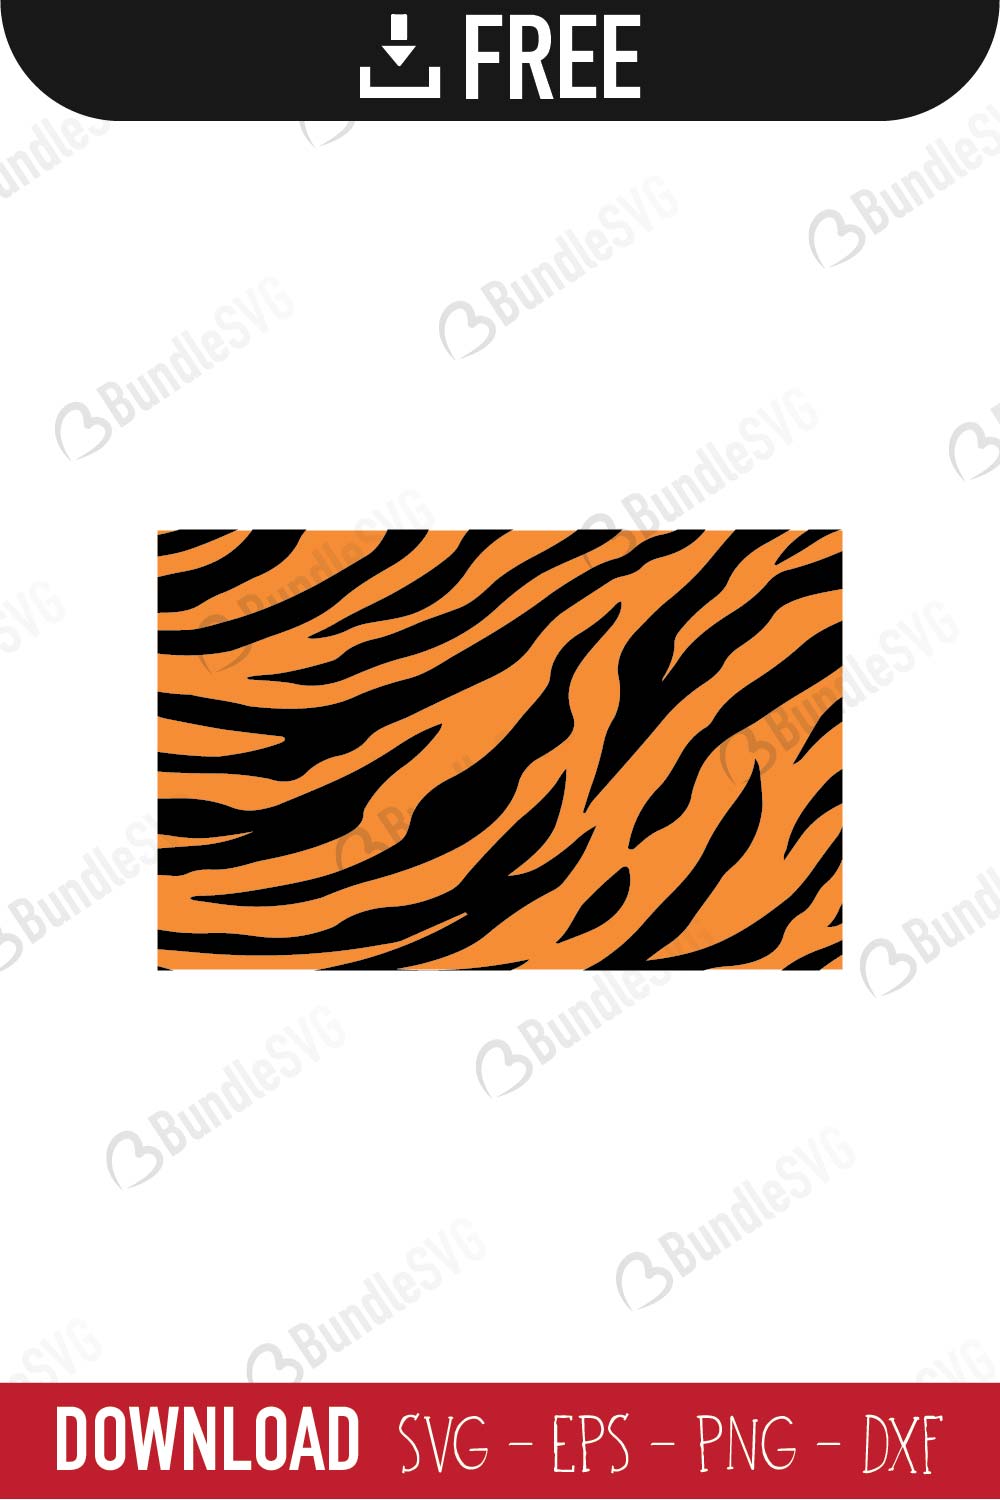 Tiger Stripes Vector in Illustrator, SVG, JPG, EPS, PNG - Download